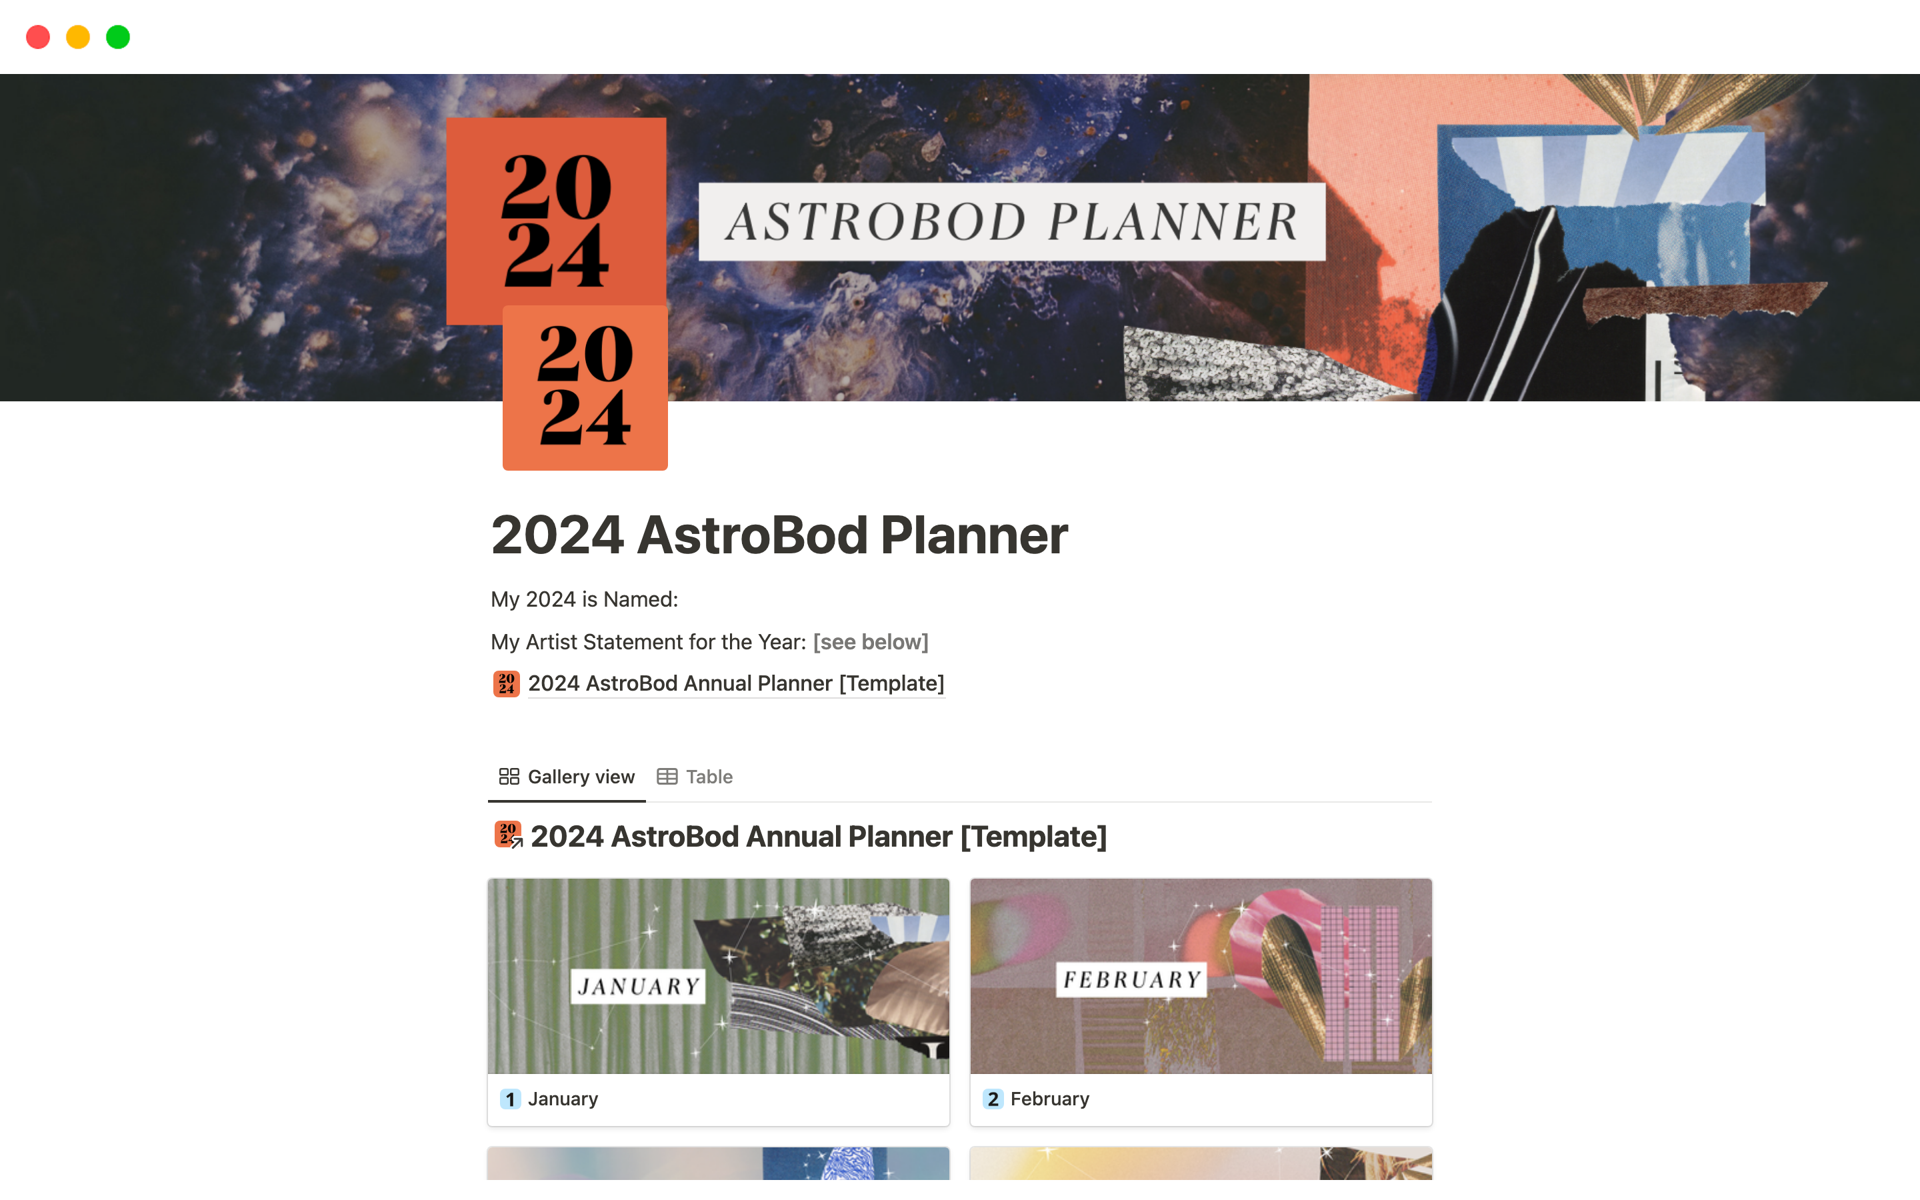 2024 AstroBod Planner님의 템플릿 미리보기